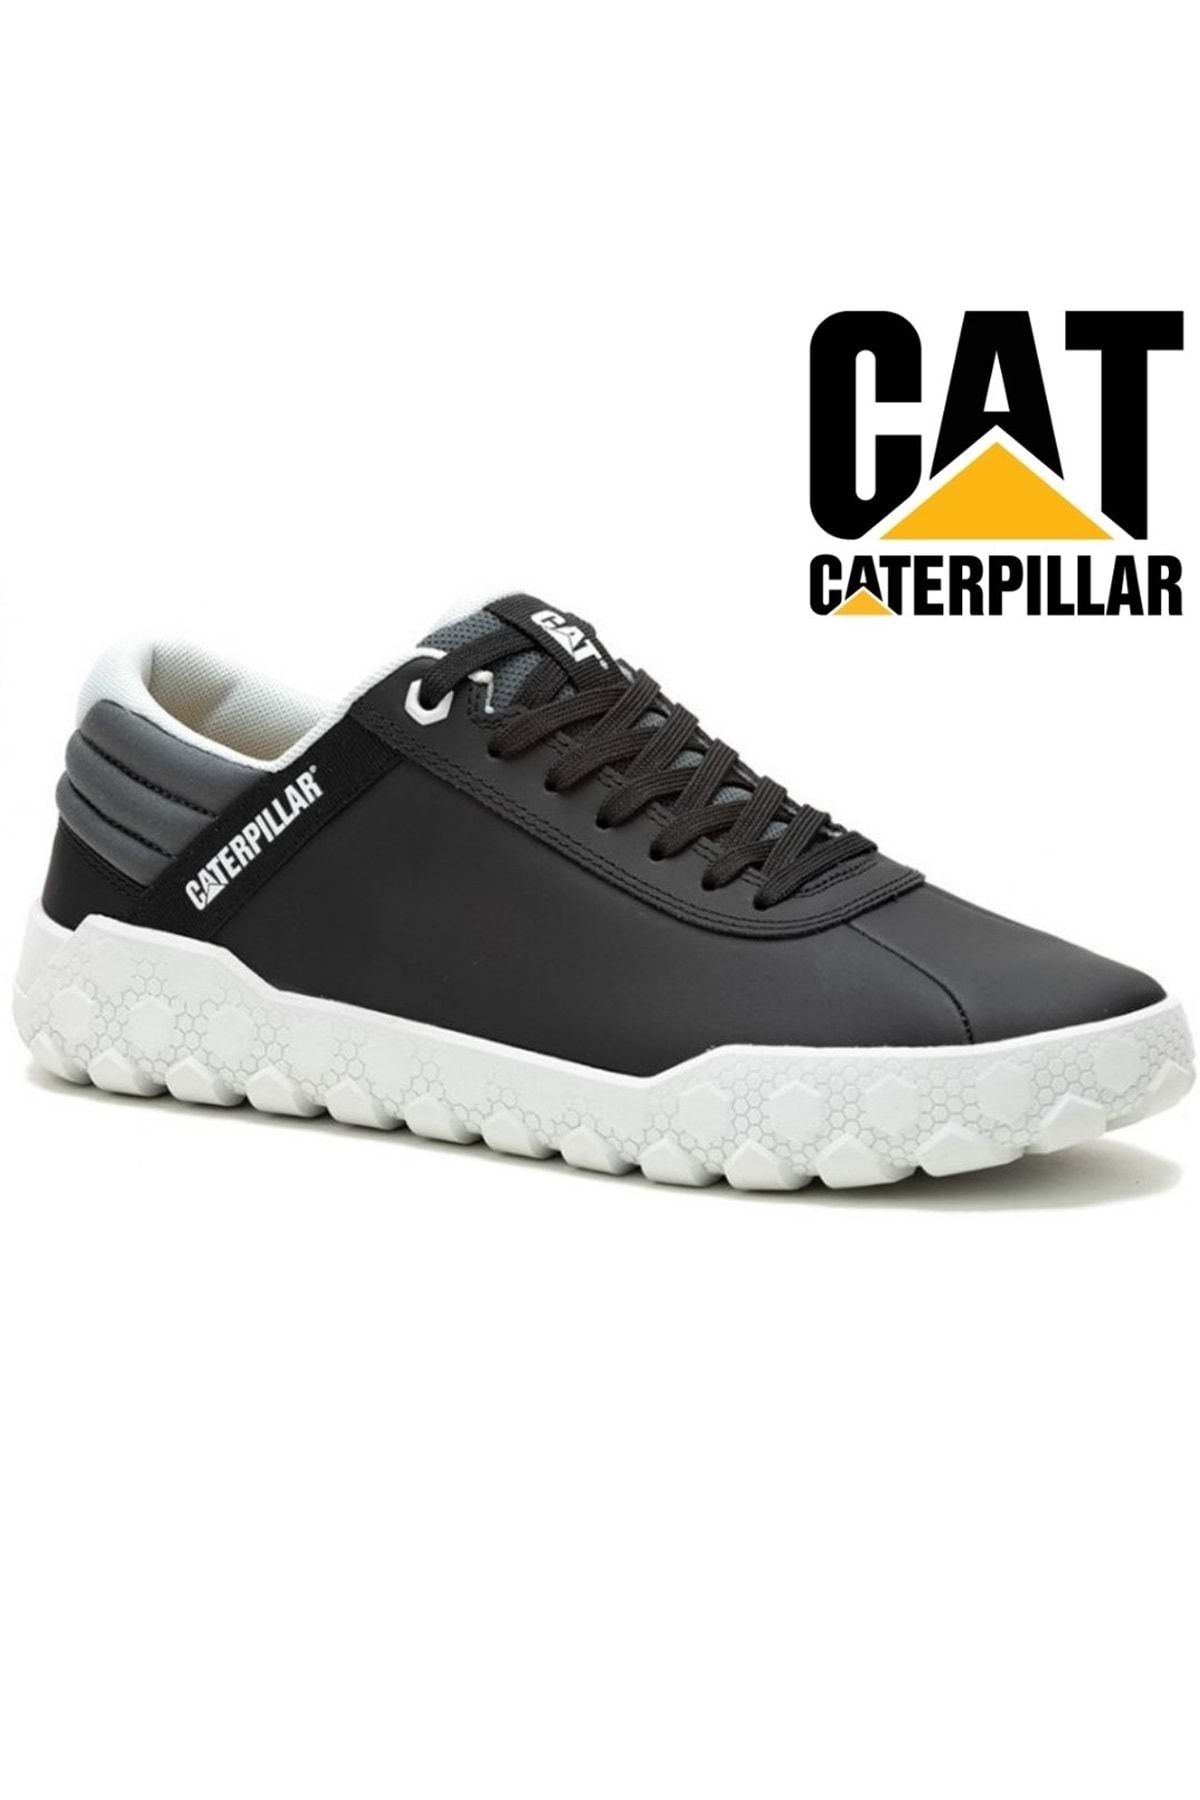 Cat Caterpillar P111335 Hex + Shoes Casual Erkek Ayakkabı SİYAH-GRİ